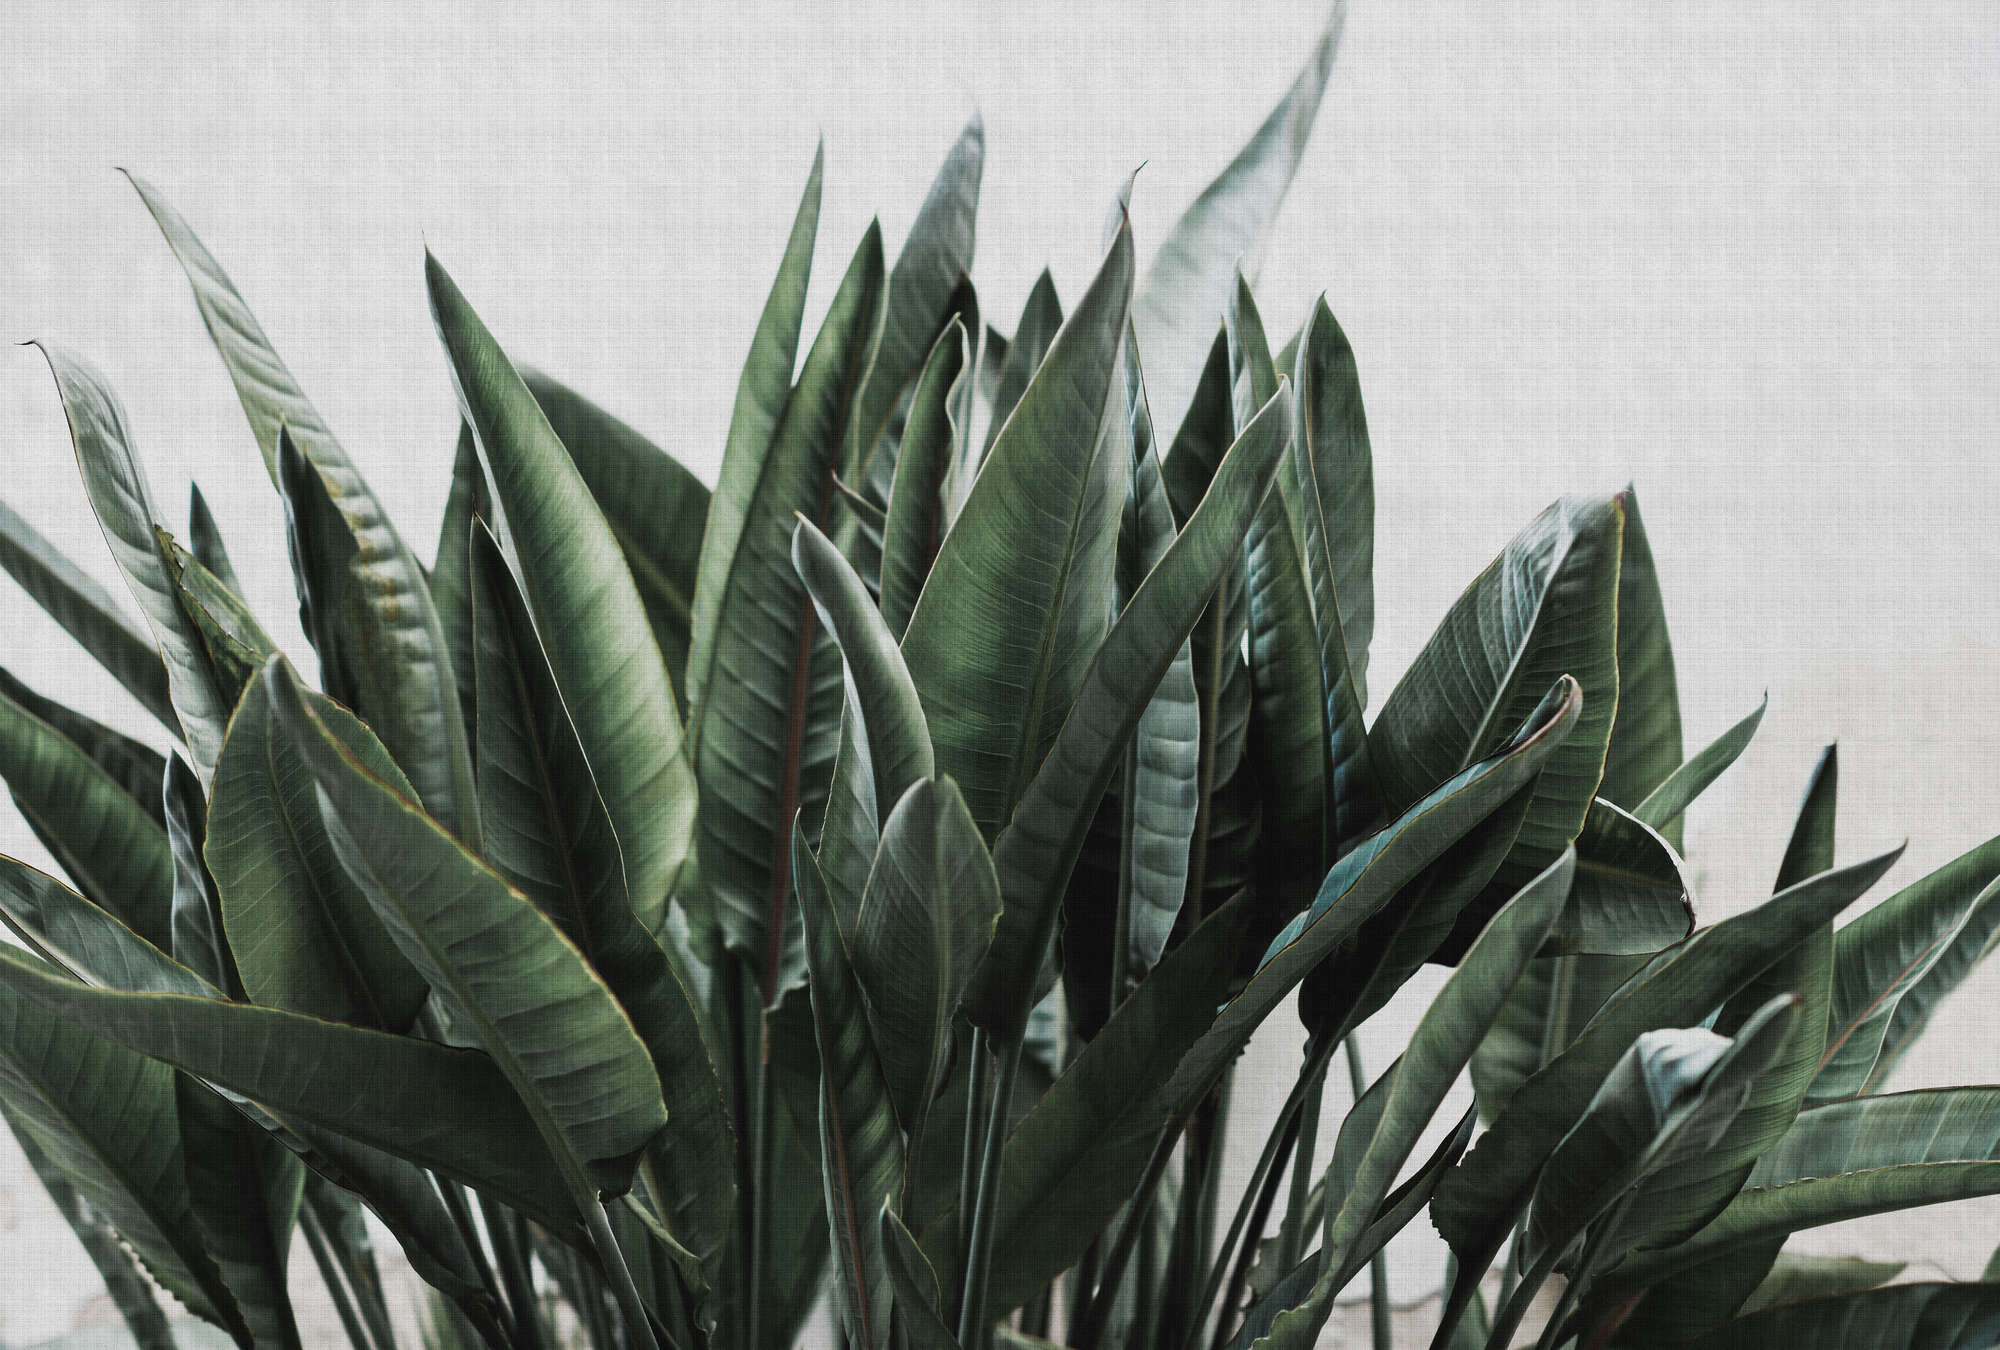             Papel pintado fotomural Selva urbana 2 hojas de palmera, estructura de lino natural plantas exóticas - Gris, Verde | Perla liso no tejido
        